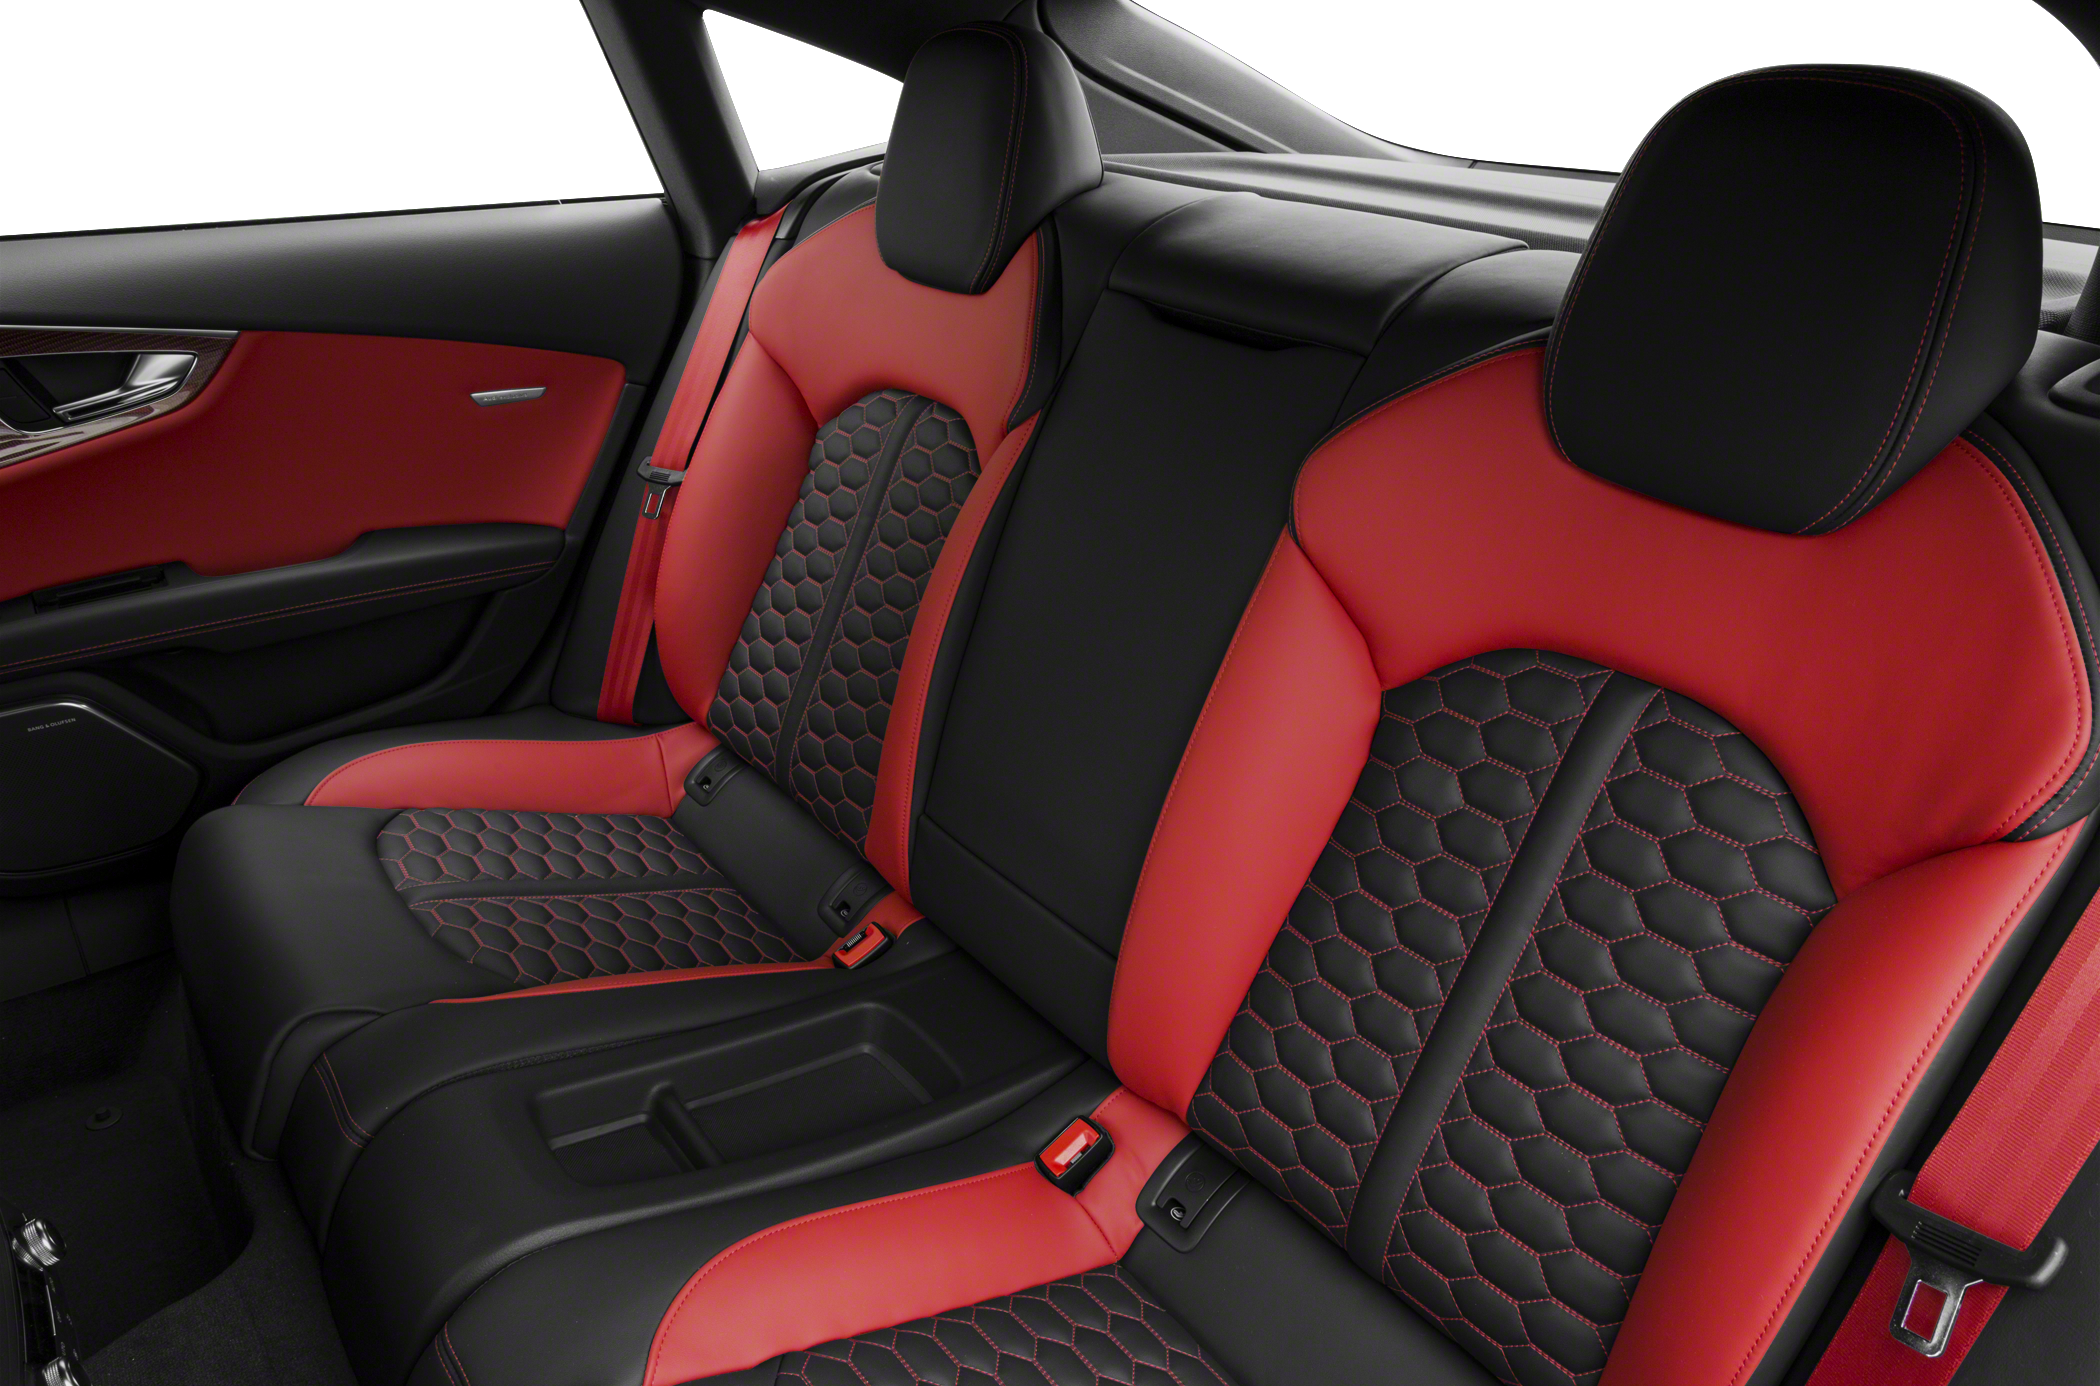 2017 Audi RS 7